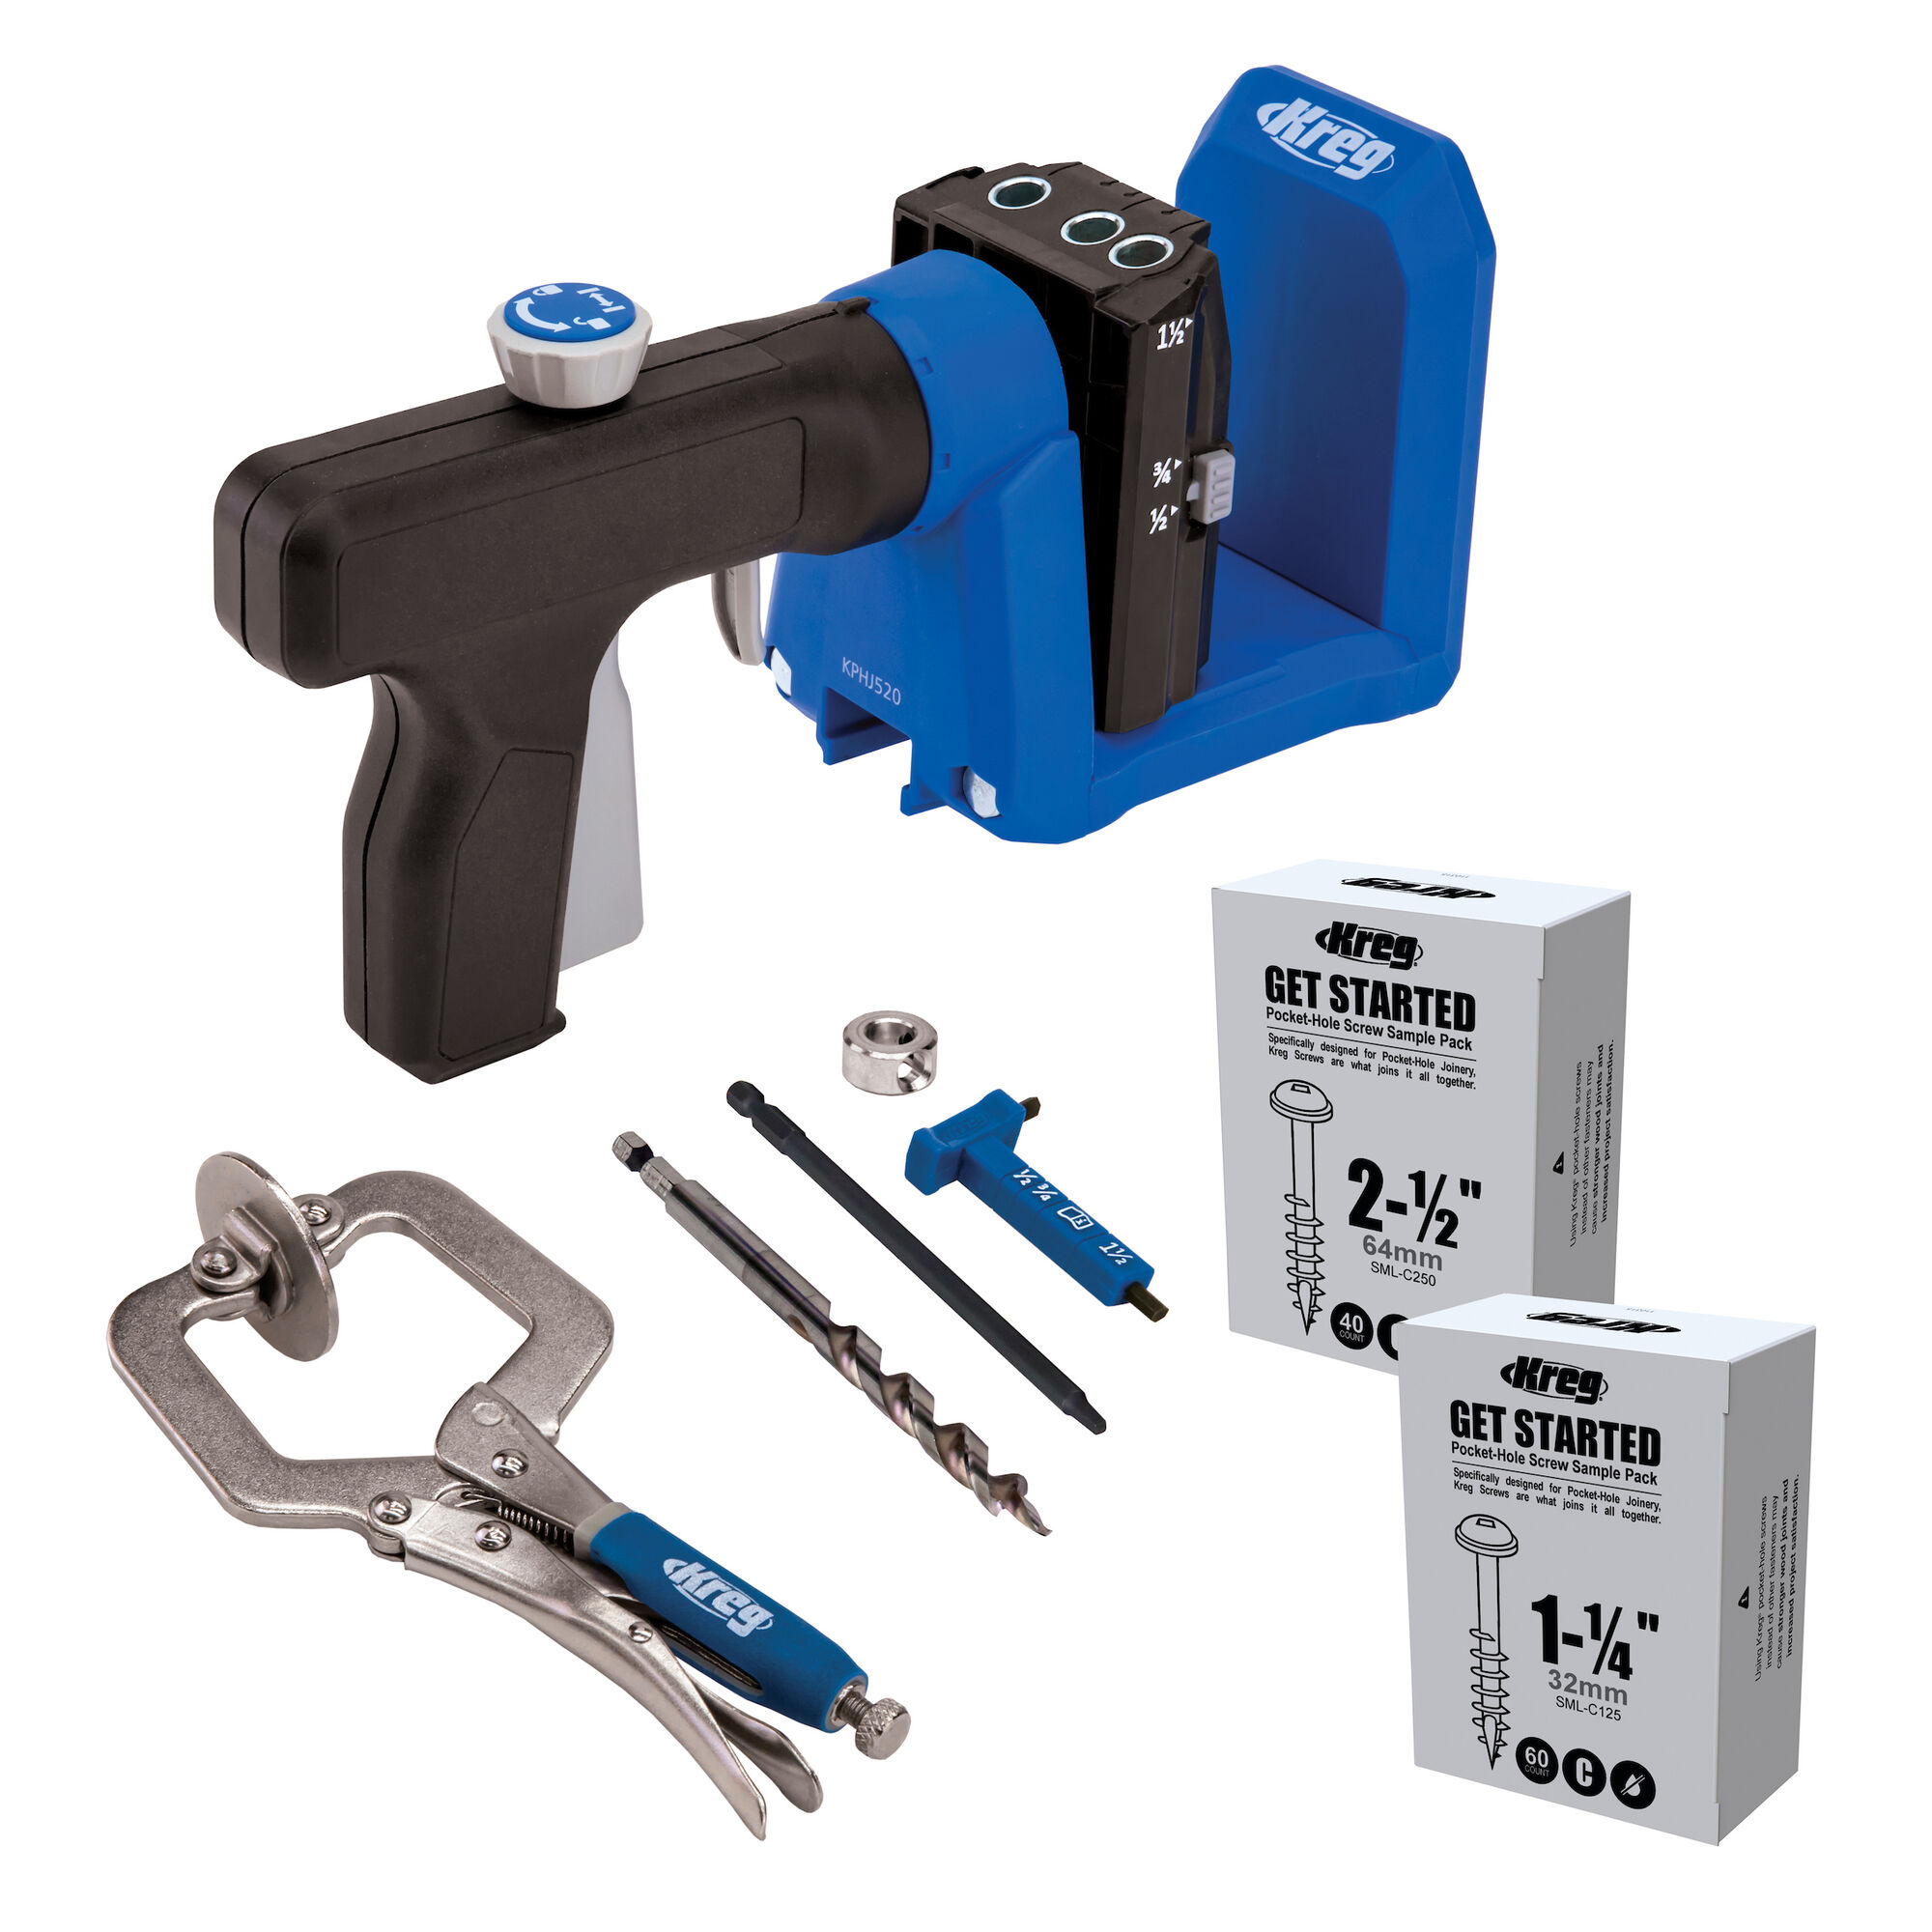 Kreg Pocket Hole Jig® 520pro Kreg Tool